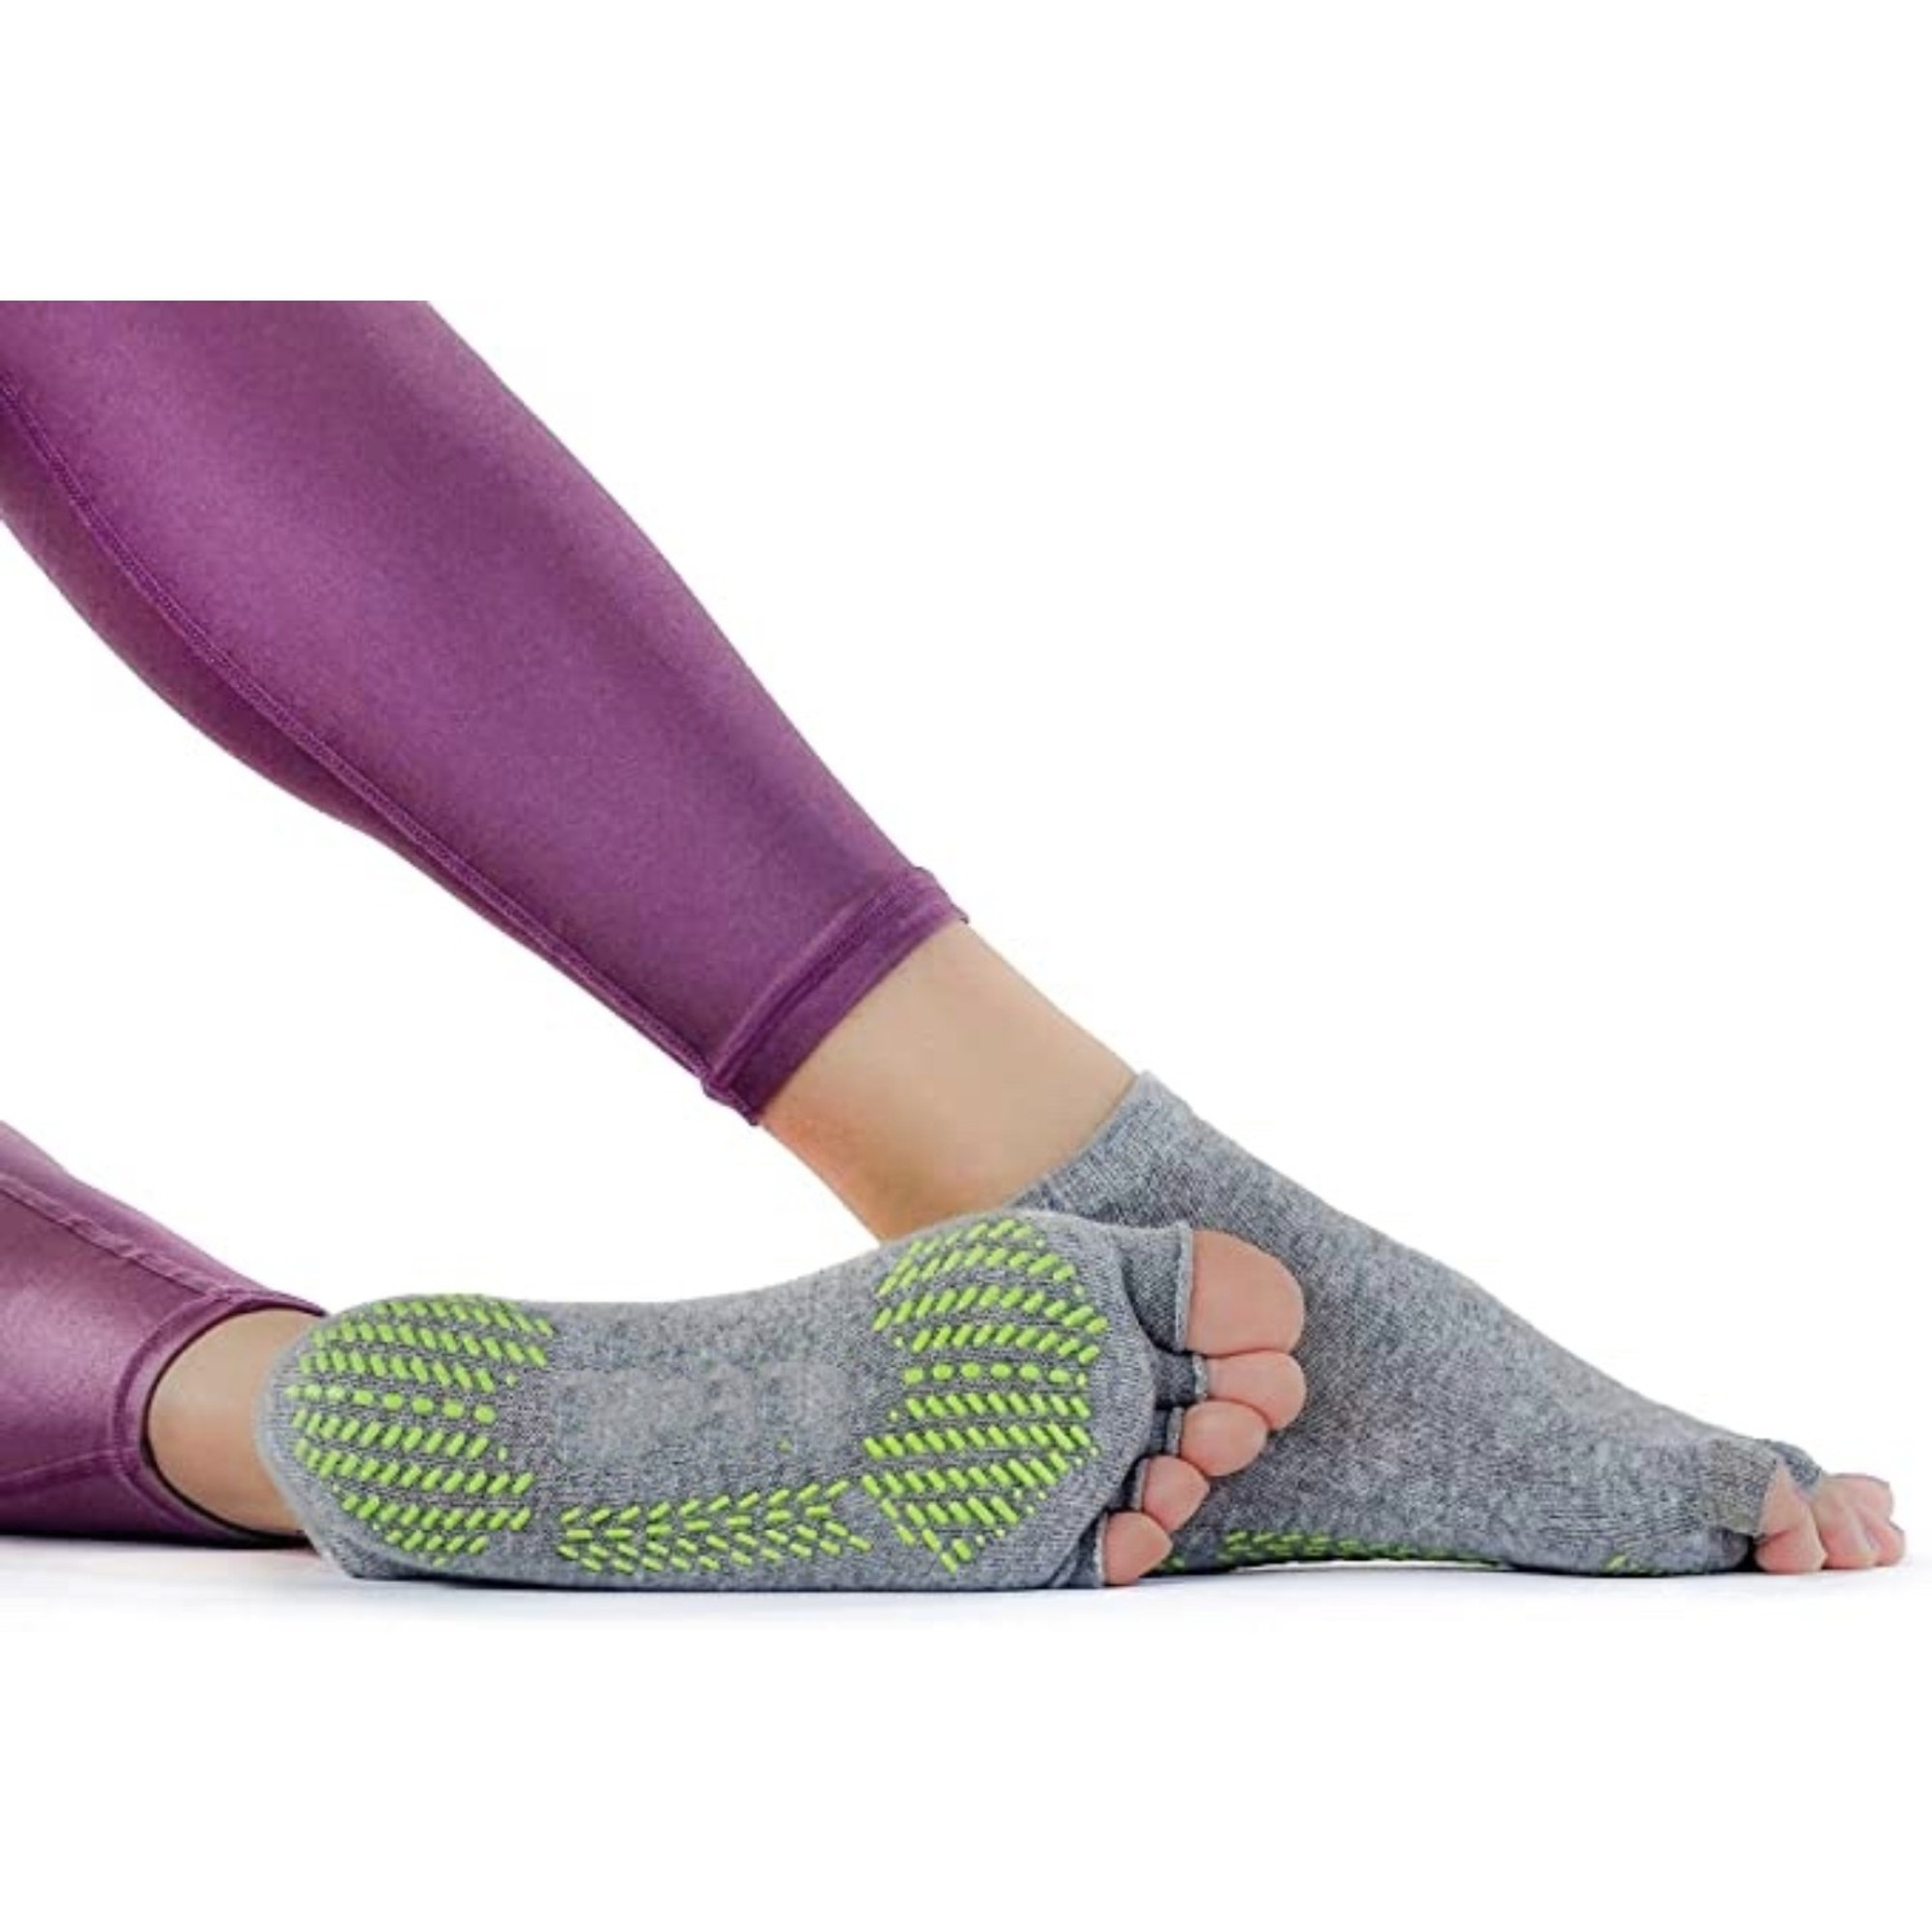 Cheap Grips Half Toe Socks Non Slip Mid-calf Socks New Toeless Socks Women